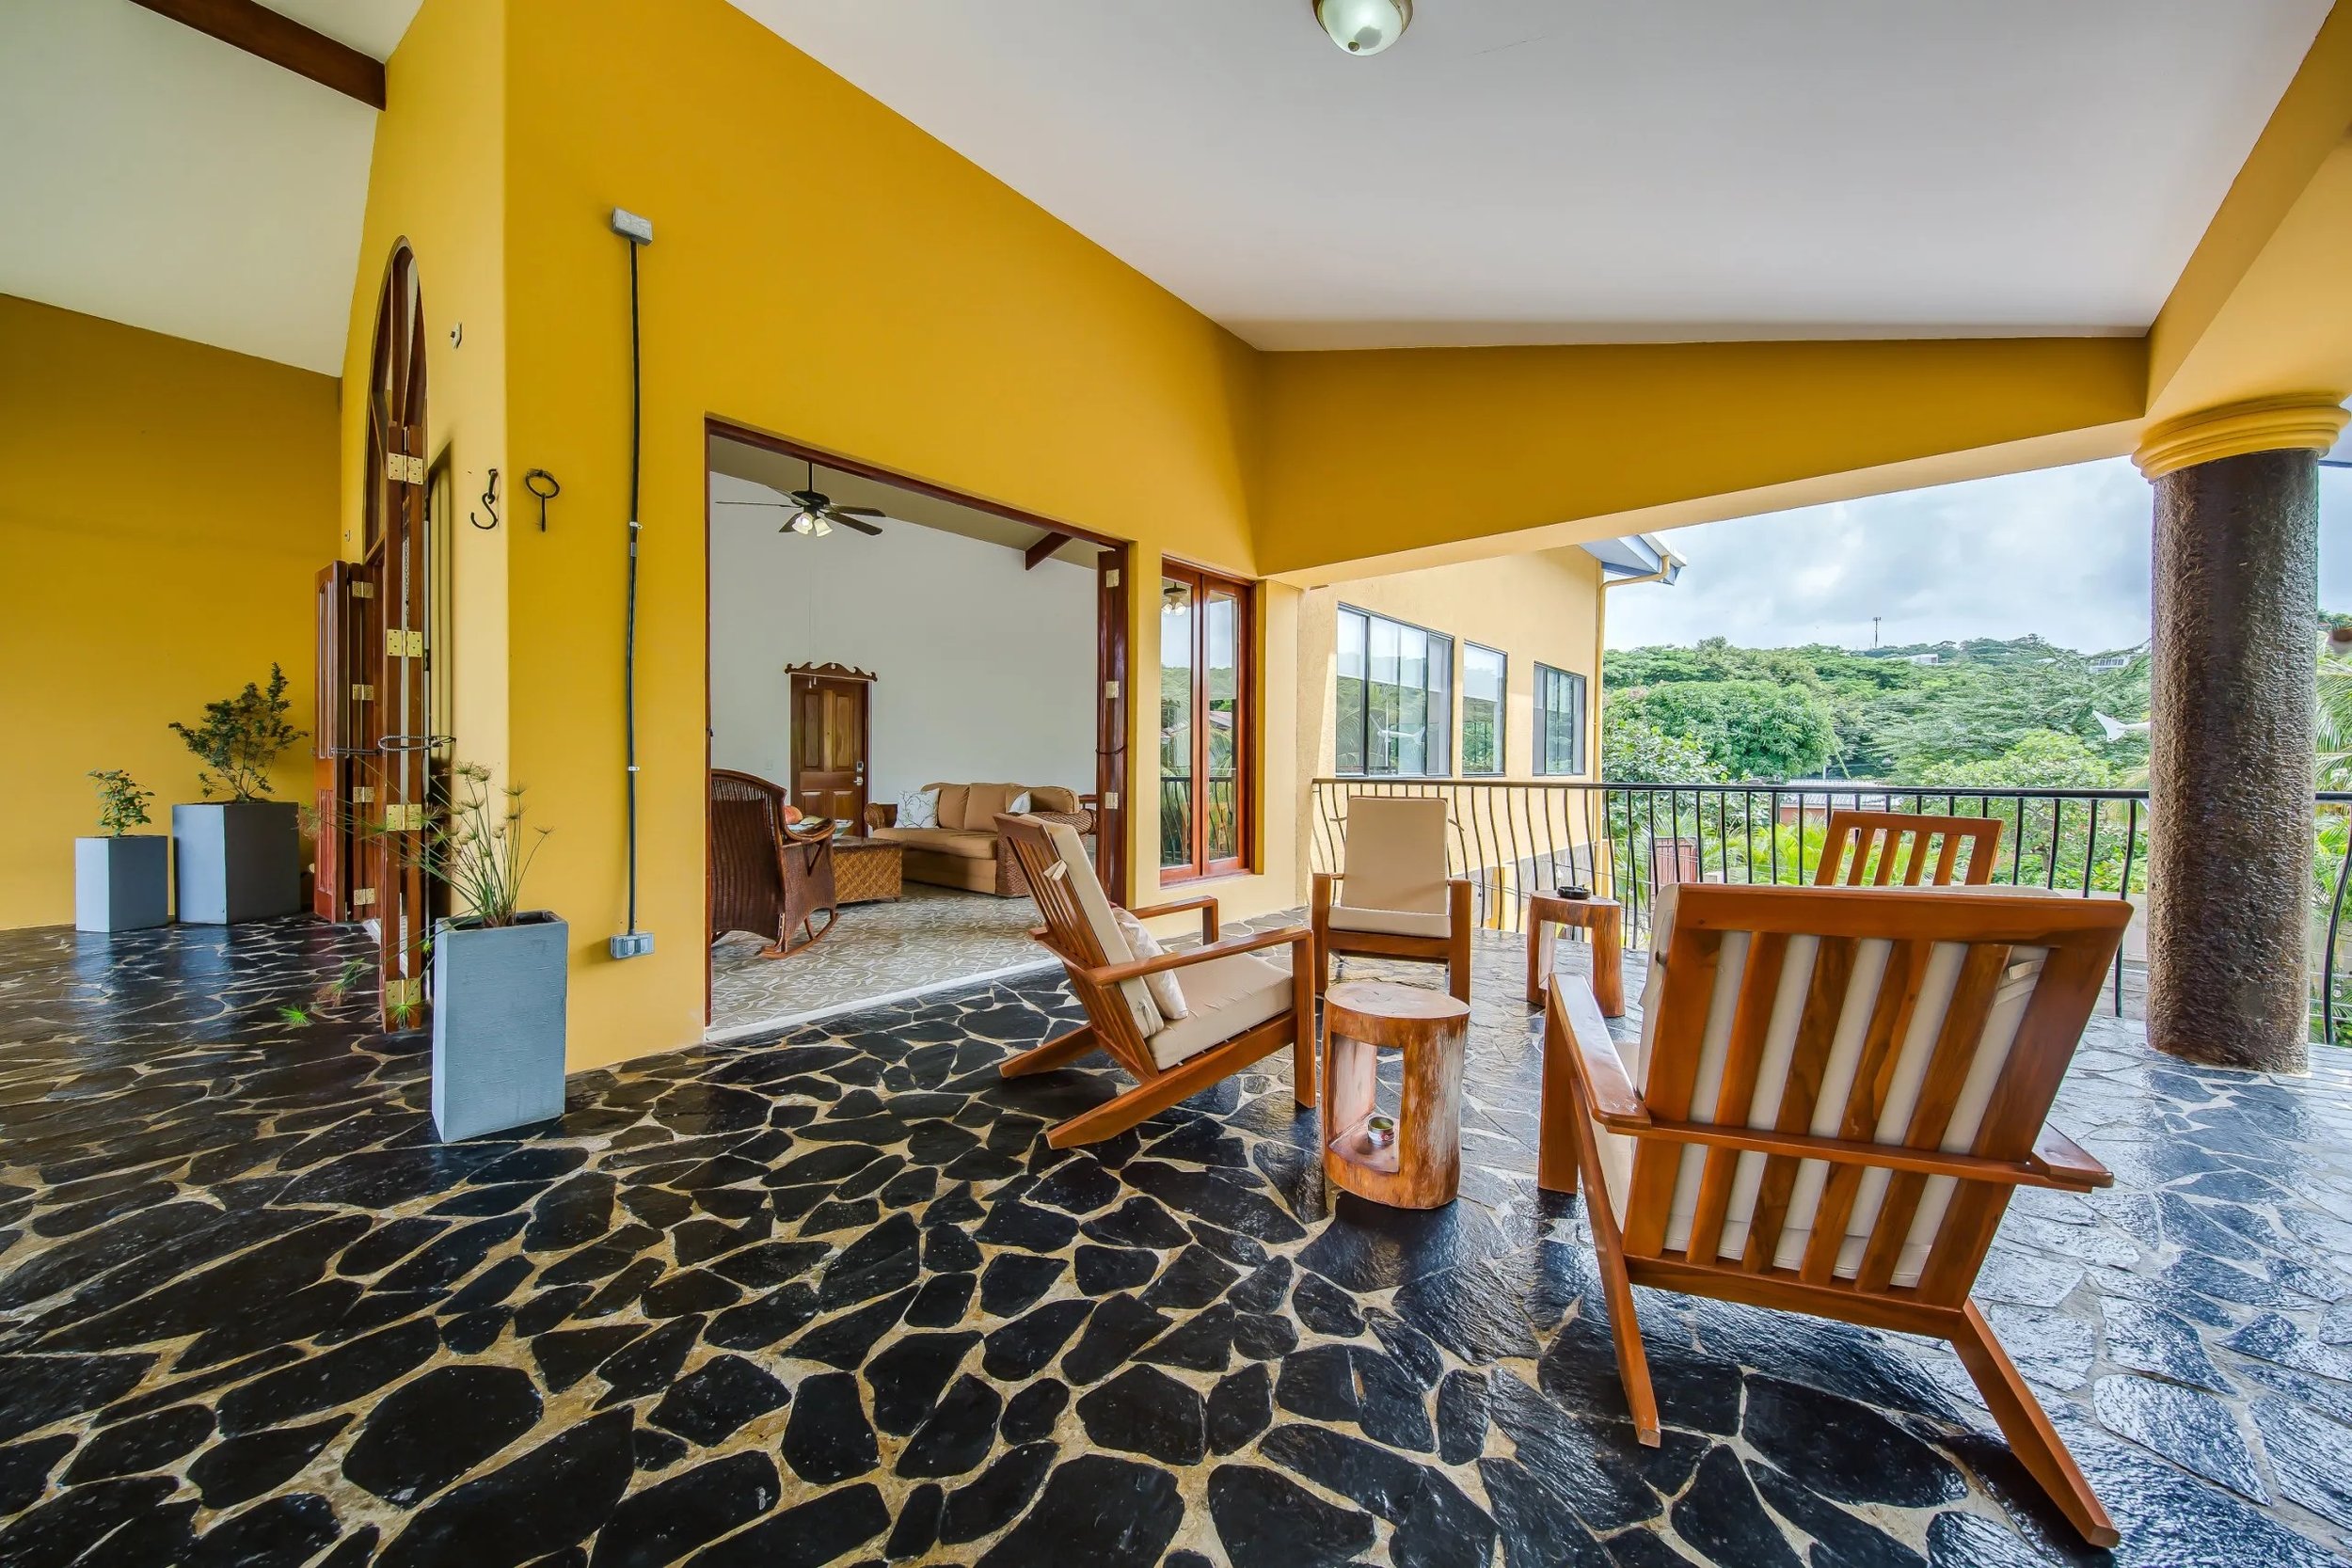 Property Real Estate Commercial Hotel For Sale in San Juan Del Sur, Nicaragua (25).jpg